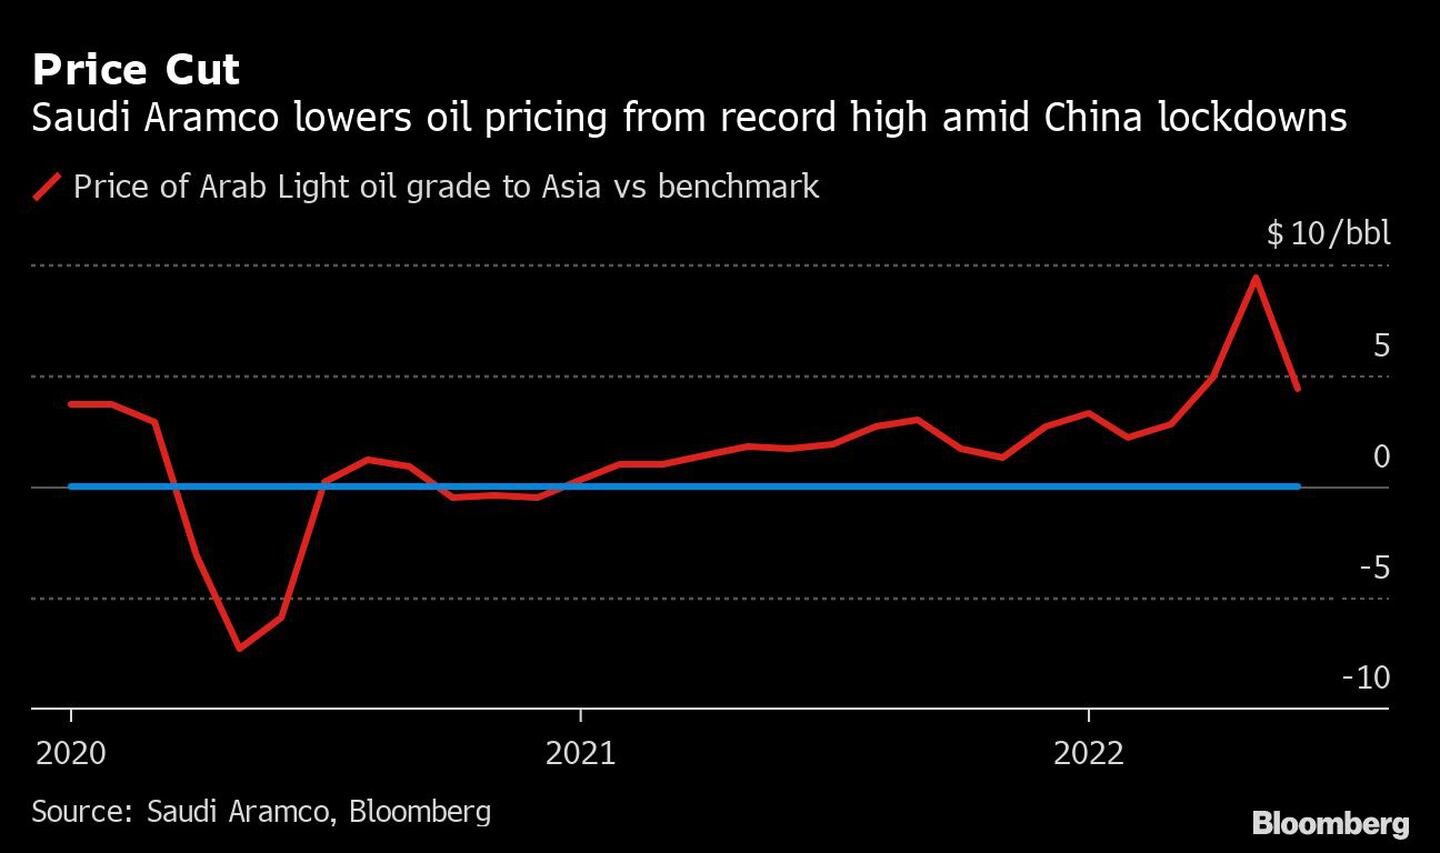 Recorte de precios. Saudi Aramco rebaja el precio del petróleo desde su máximo histórico en medio del bloqueo de China.dfd